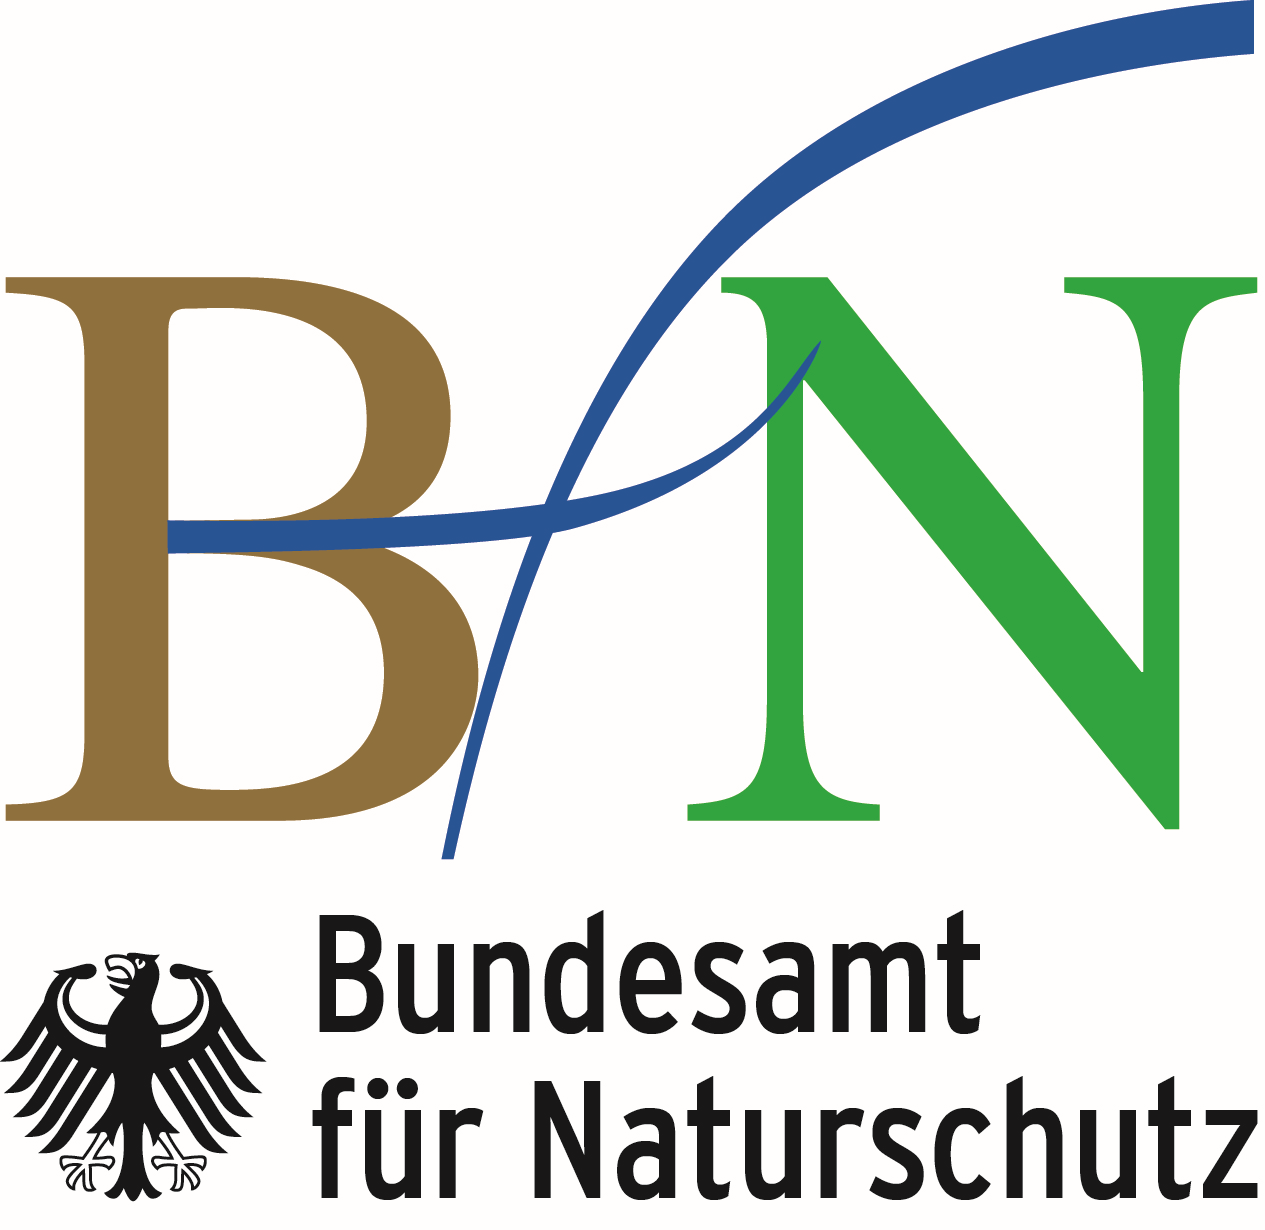 BfN logo